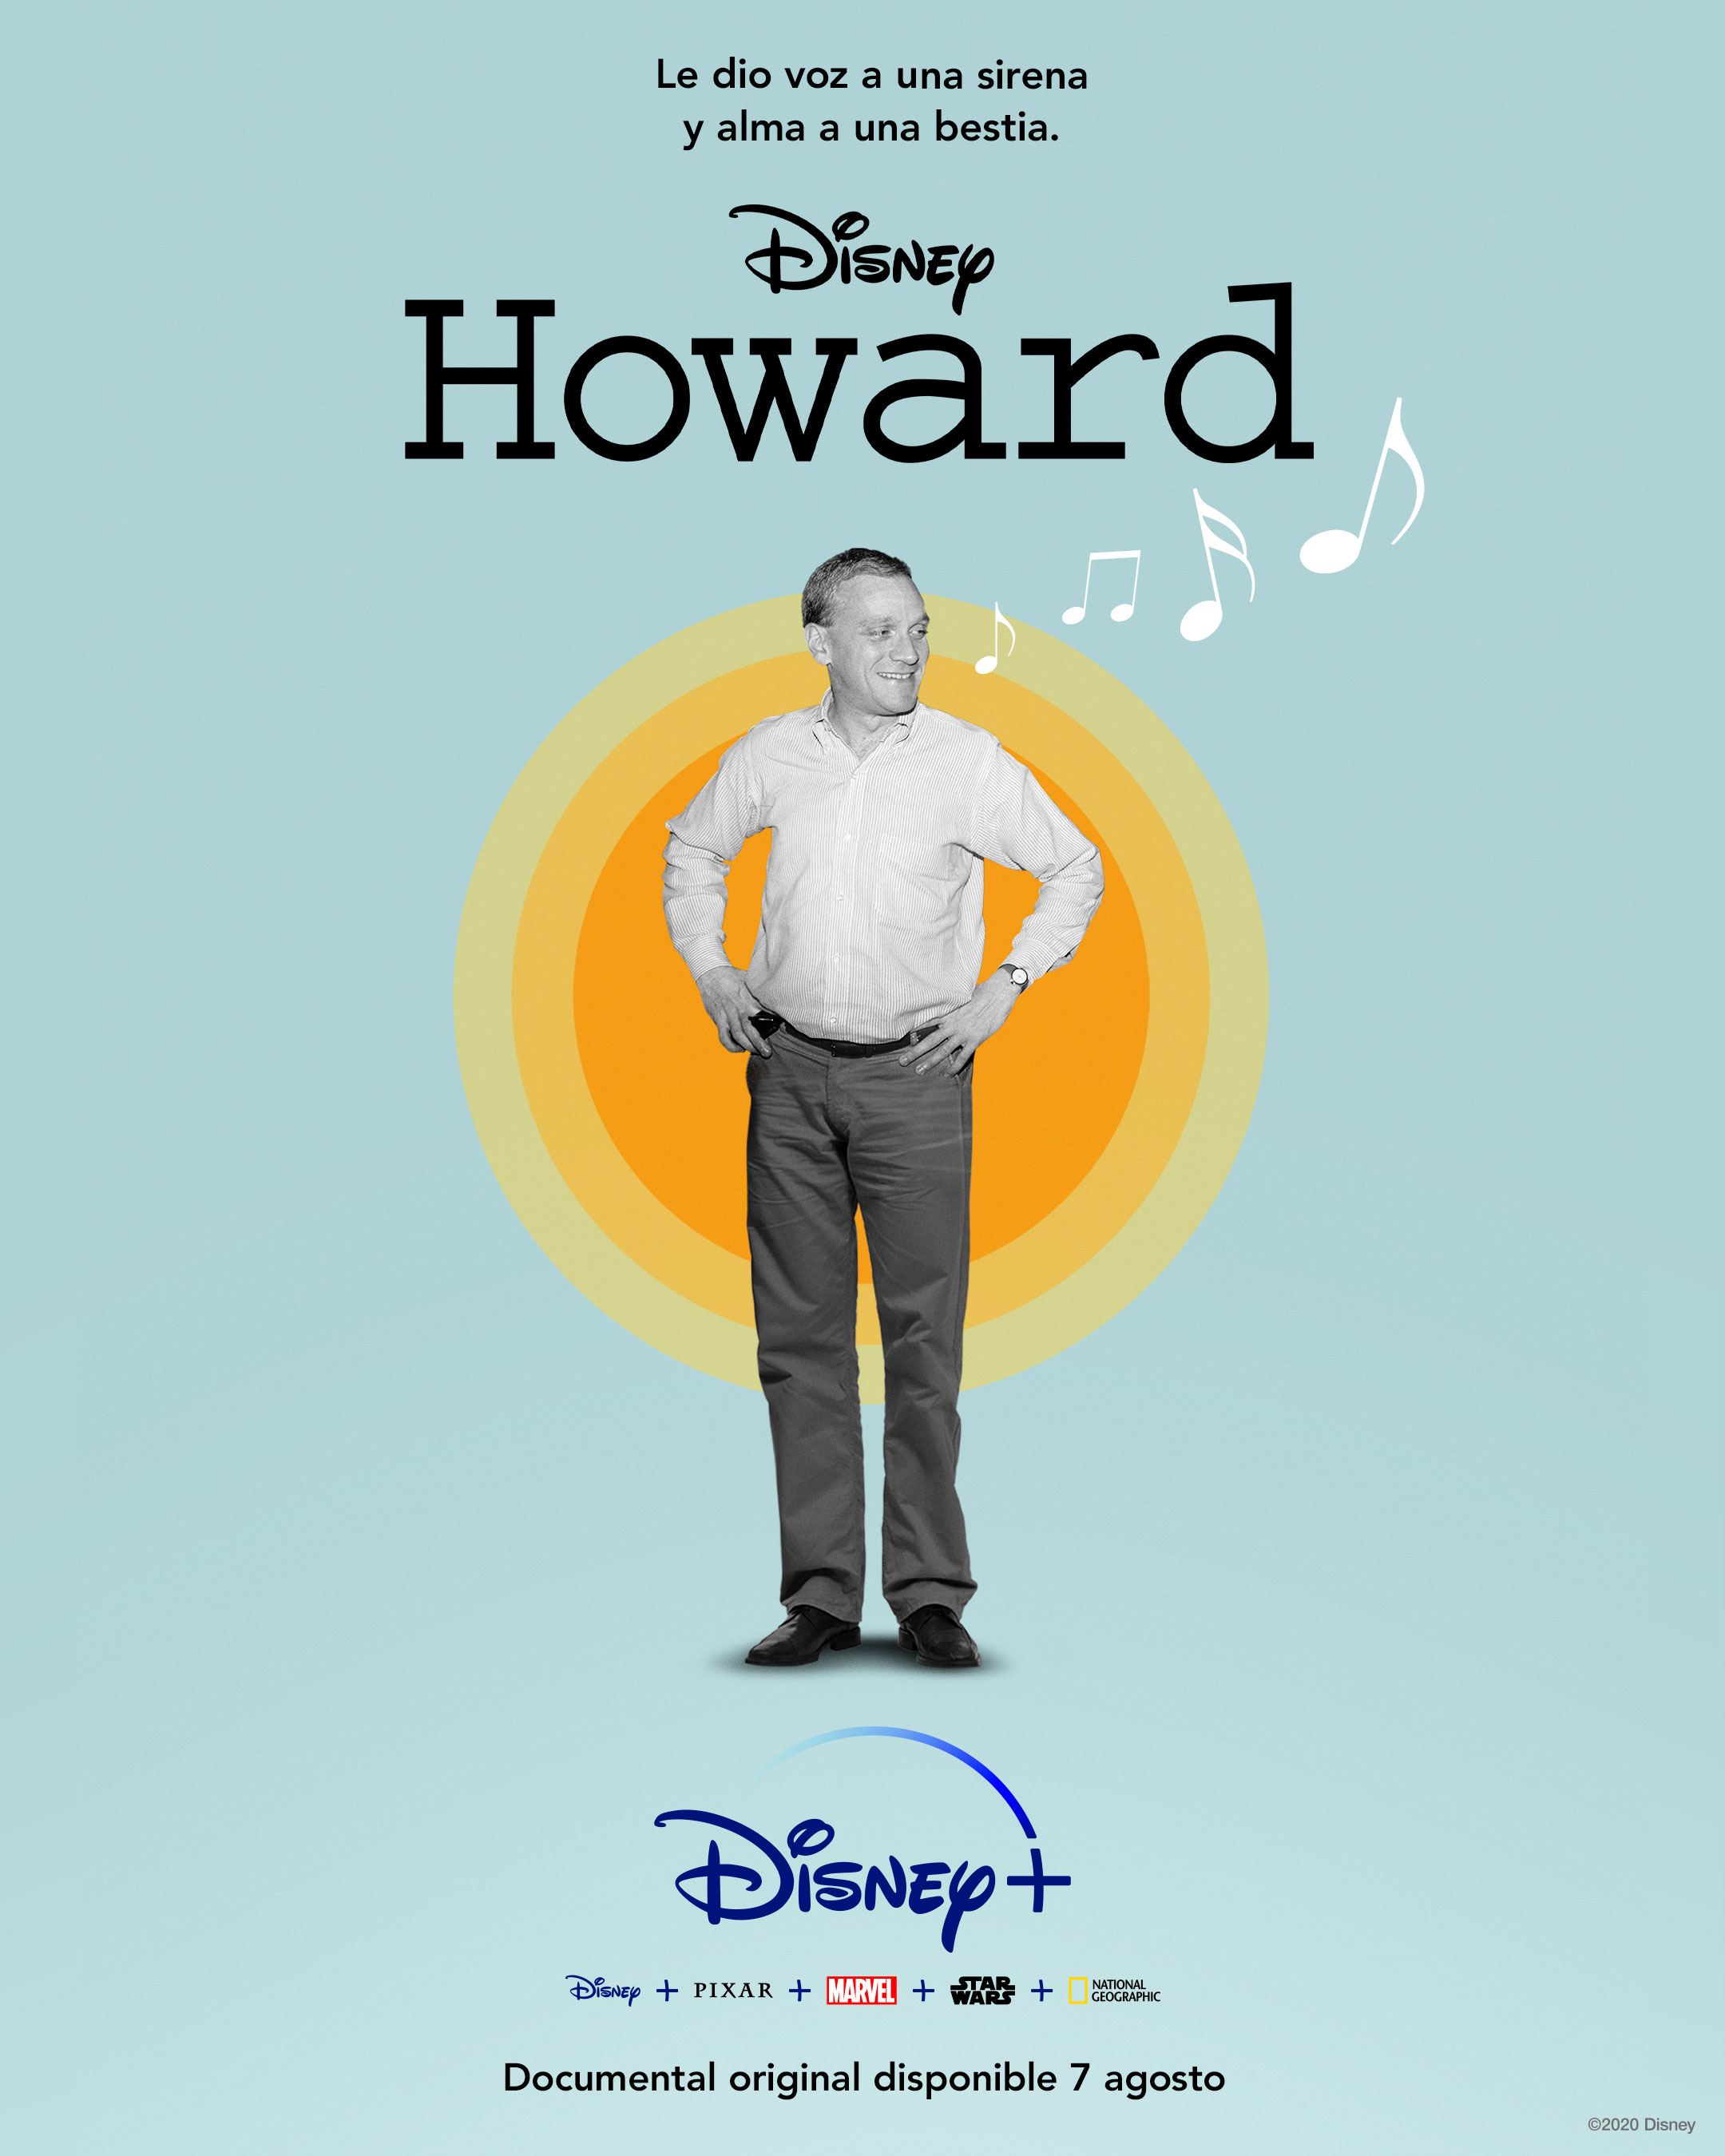 'Howard' se estrena en Disney + el próximo 7 de agosto